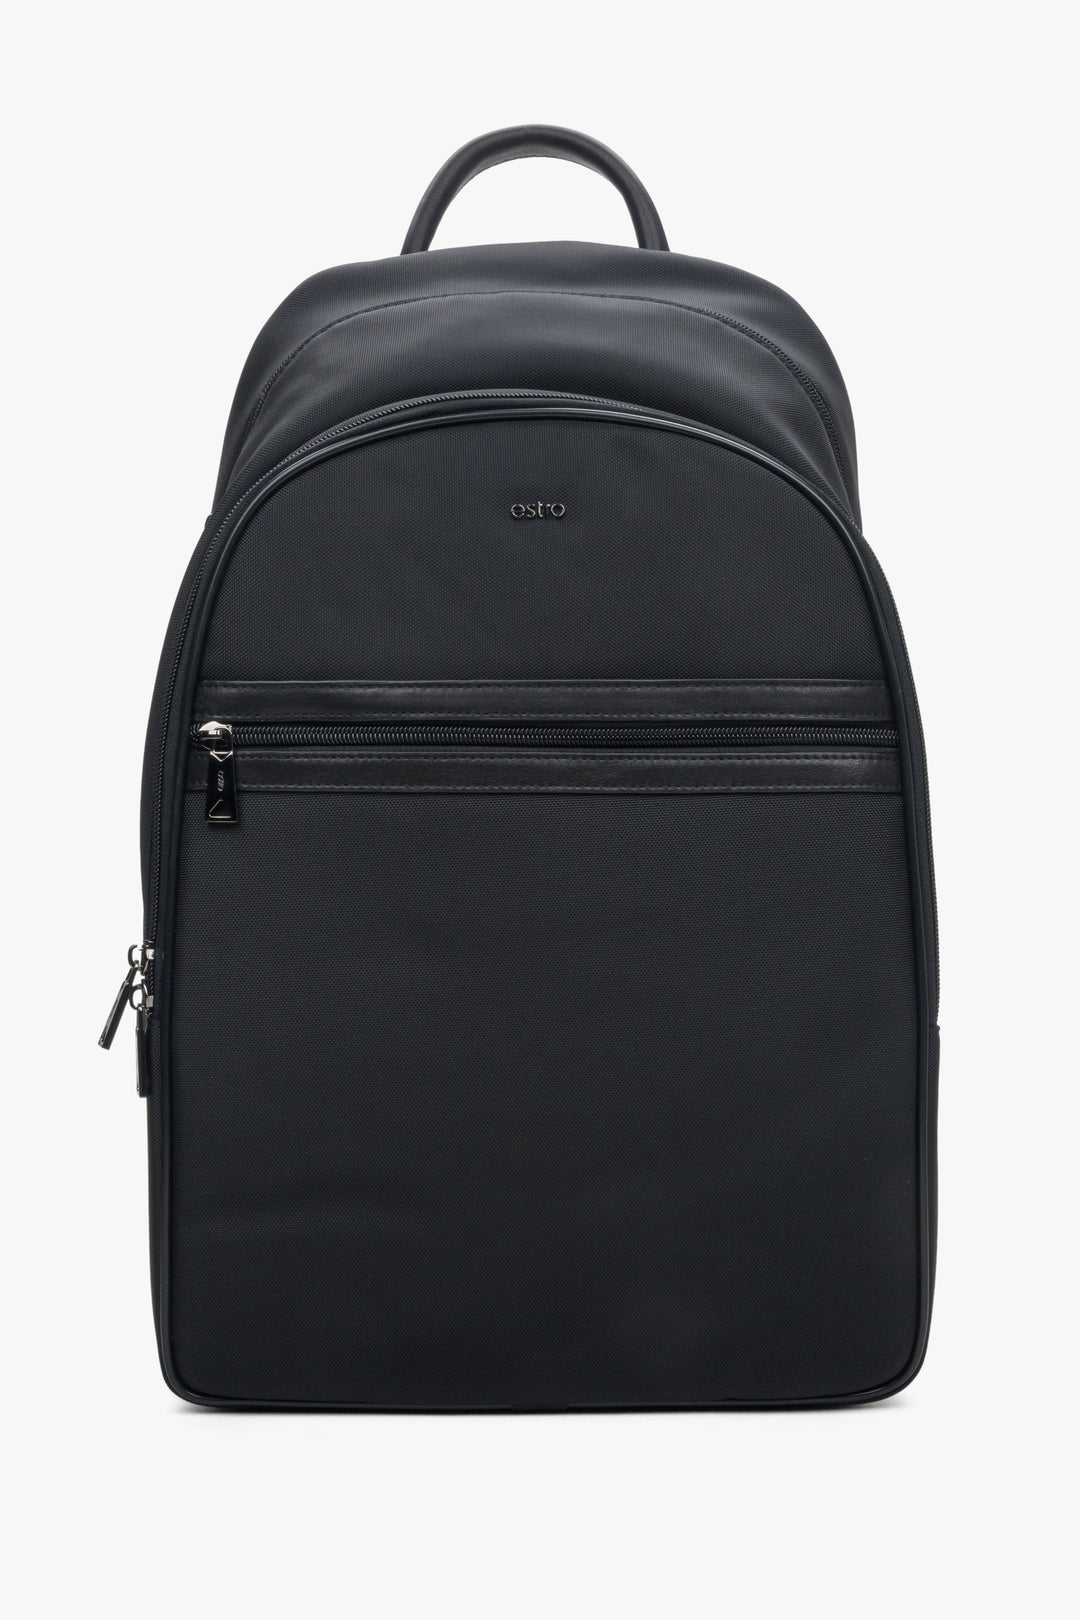 Men's Black Functional Backpack with Adjustable Shoulder Straps Estro ER00114155.